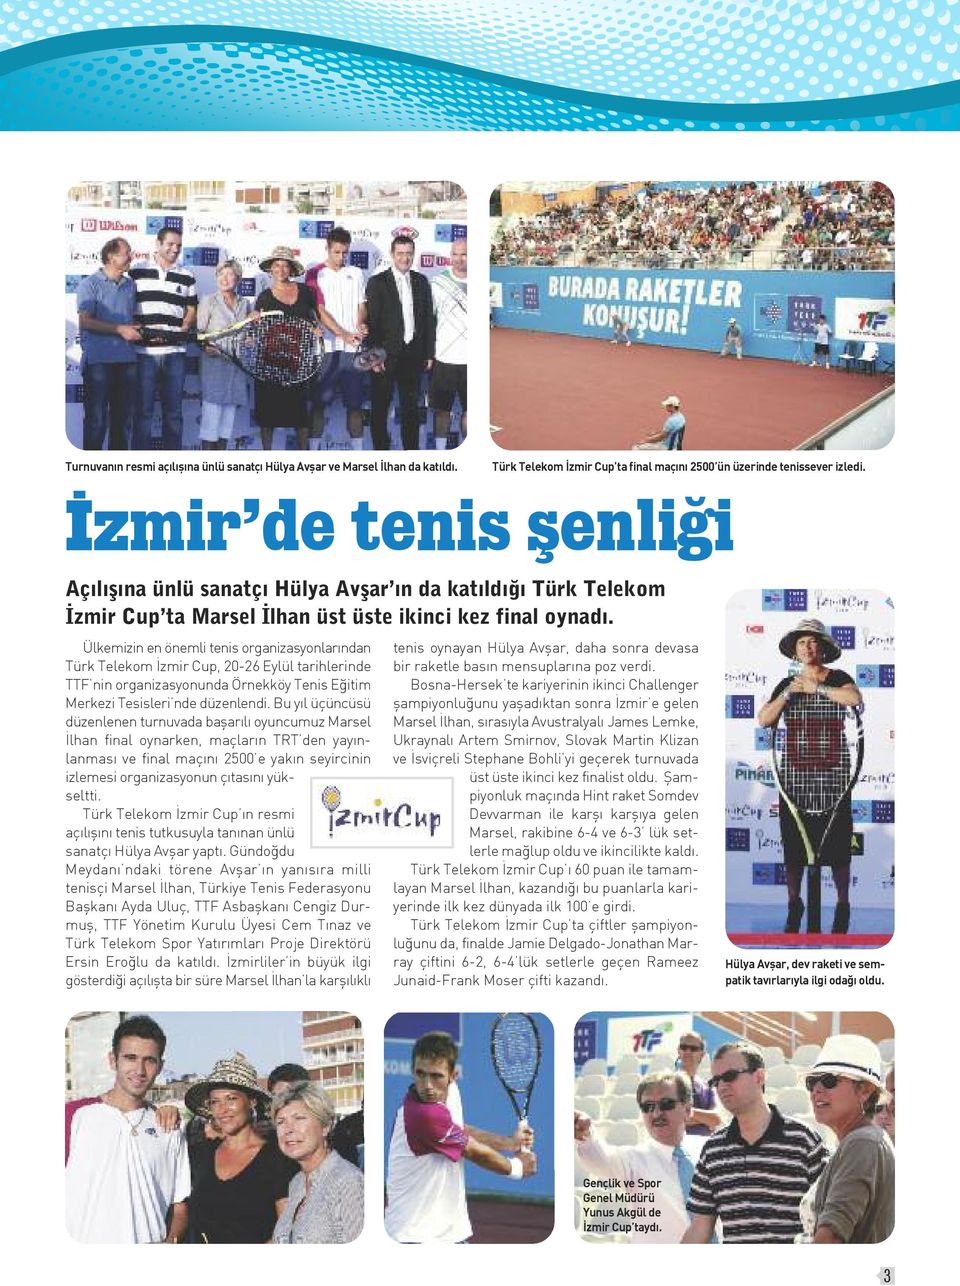 Ülkemizin en önemli tenis organizasyonlarından Türk Telekom İzmir Cup, 20-26 Eylül tarihlerinde TTF nin organizasyonunda Örnekköy Tenis Eğitim Merkezi Tesisleri nde düzenlendi.